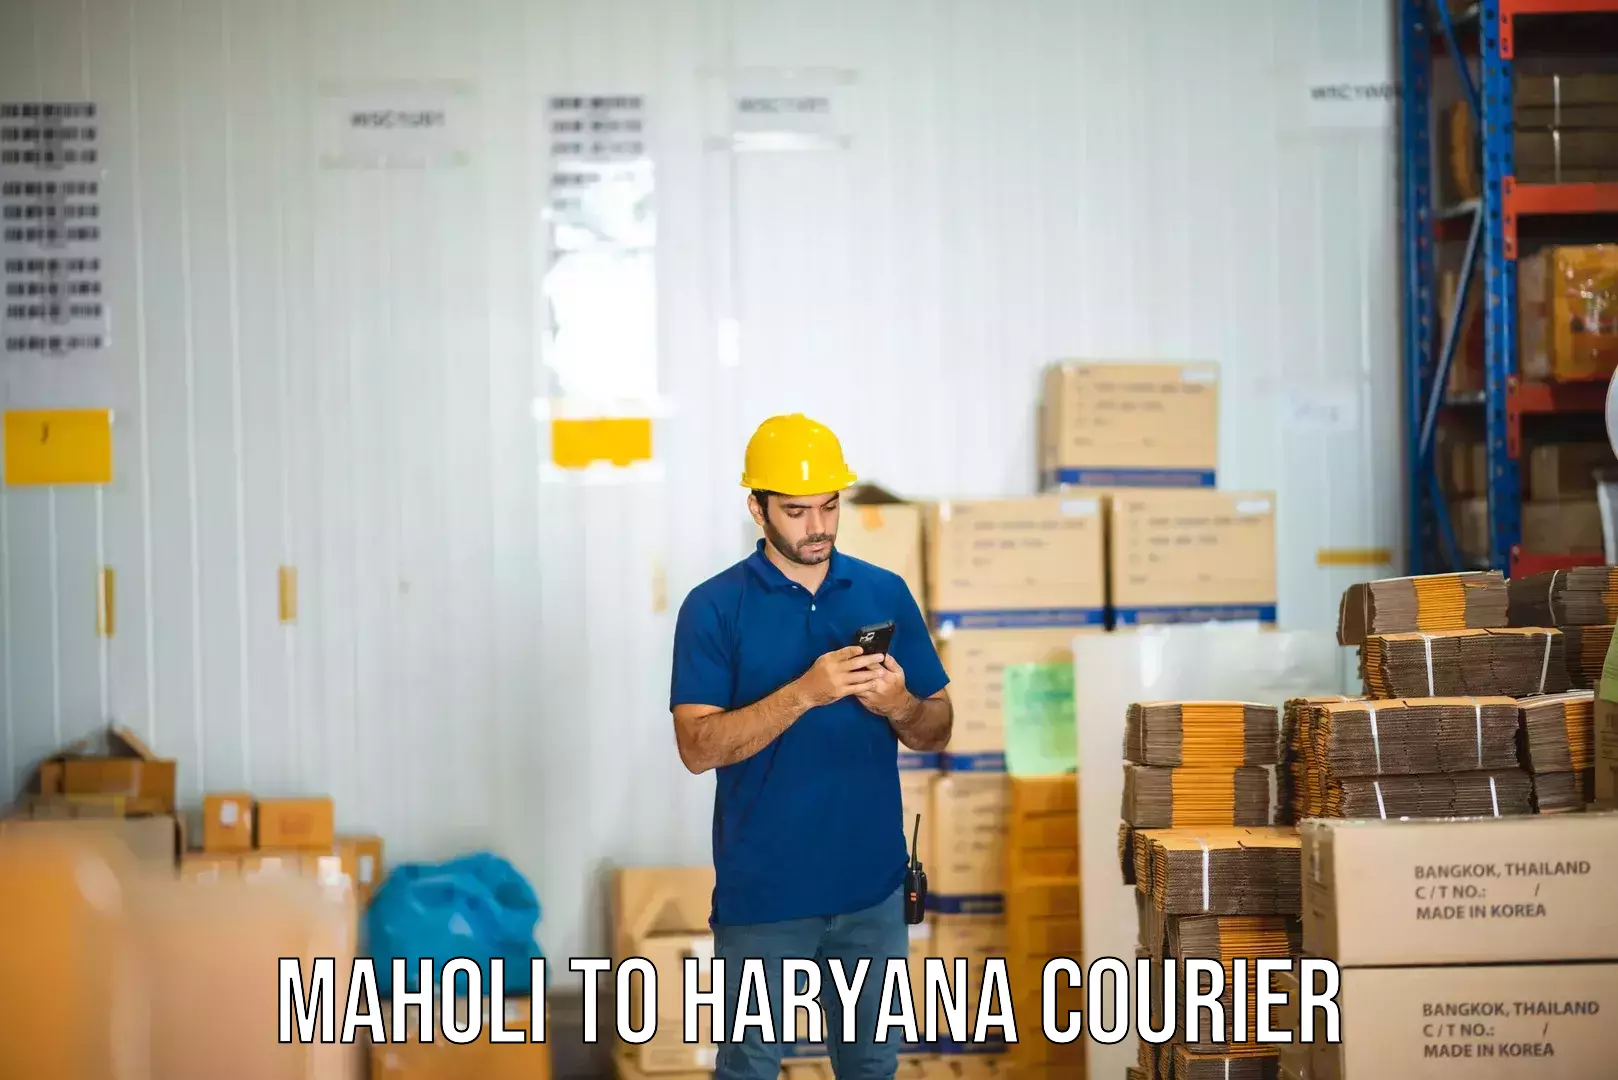 Budget-friendly shipping Maholi to Haryana